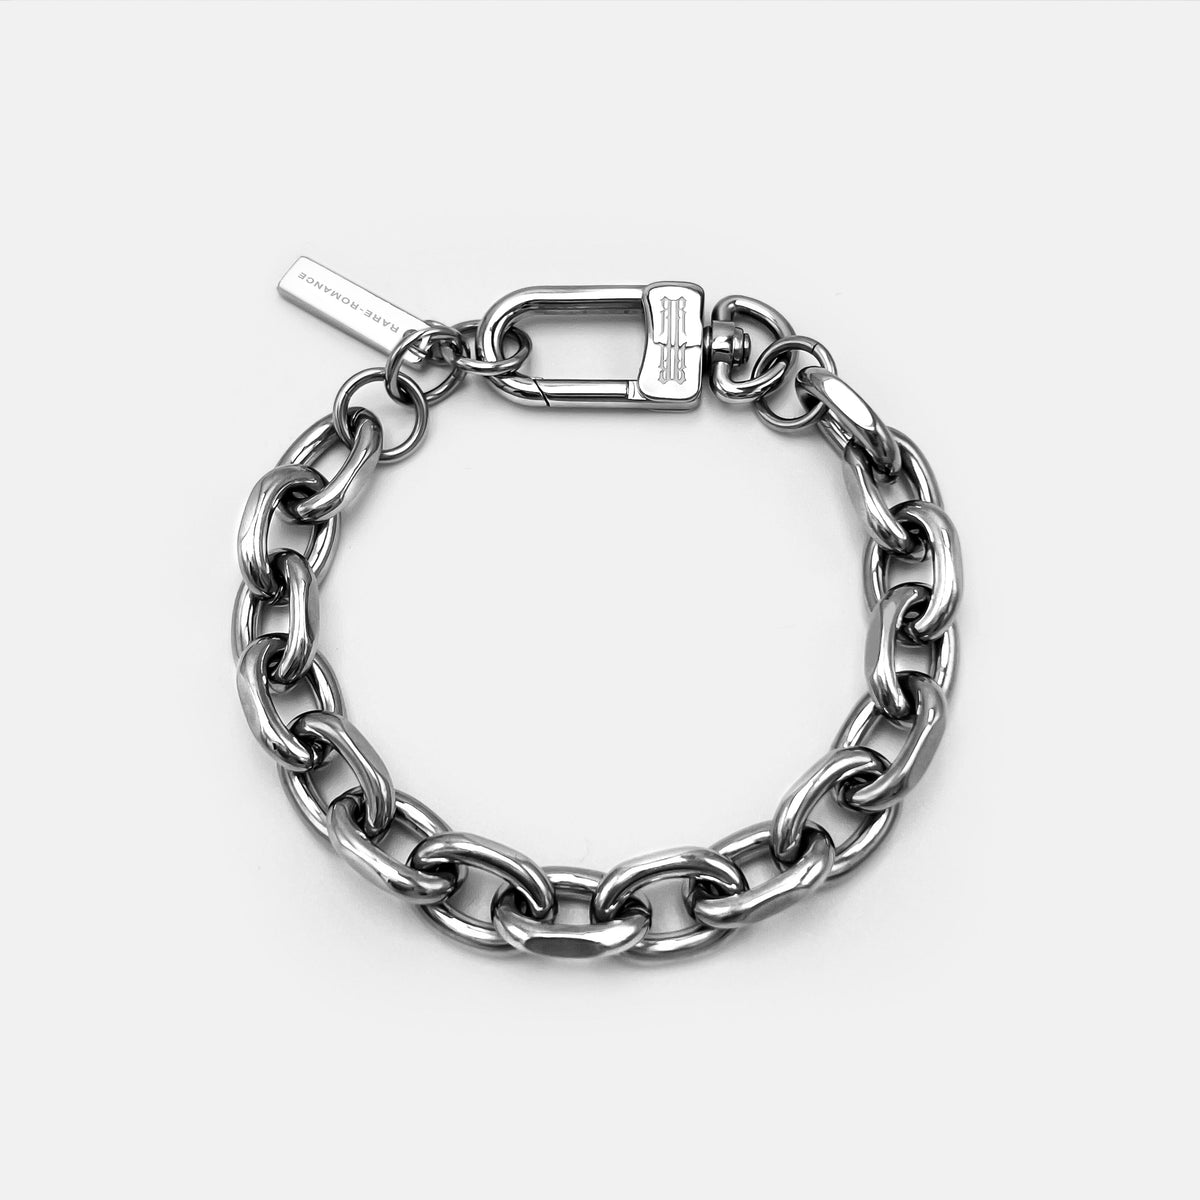 Crazy In Lock Bracelet - Luxury All Fashion Jewelry - Fashion